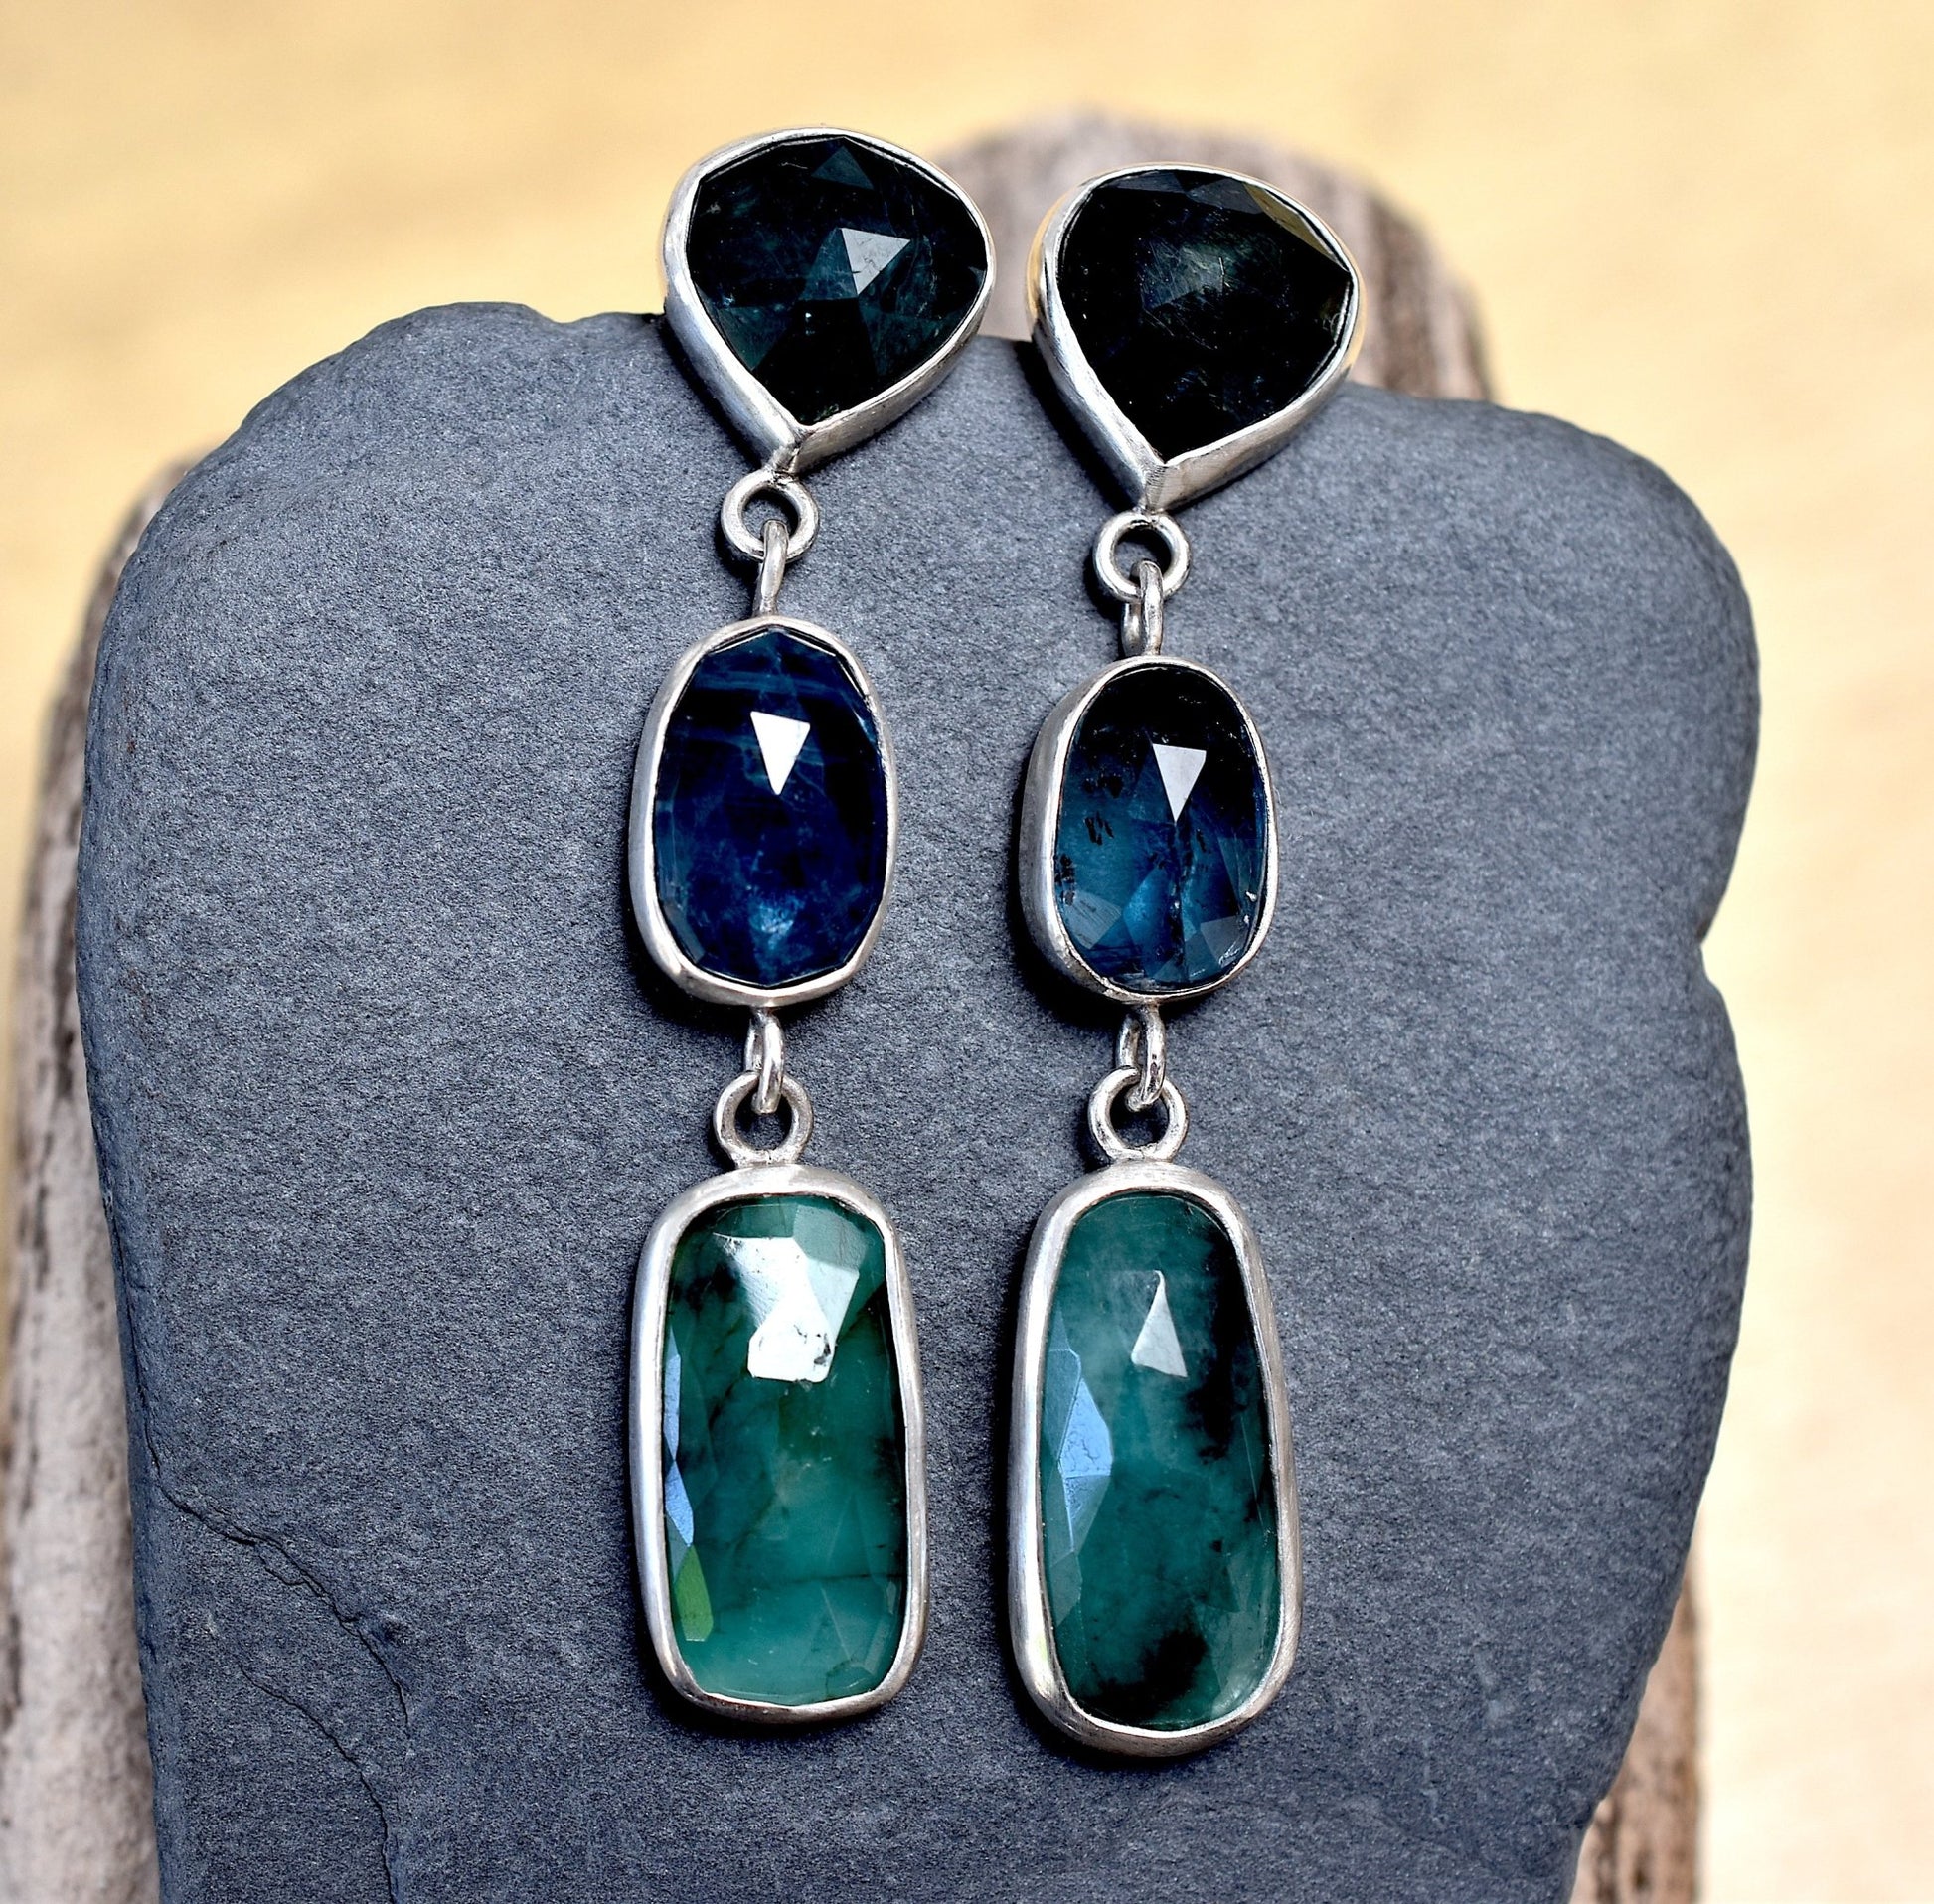 Emerald, Grandidierite & Teal Kyanite Earrings - Bluecave Jewelry